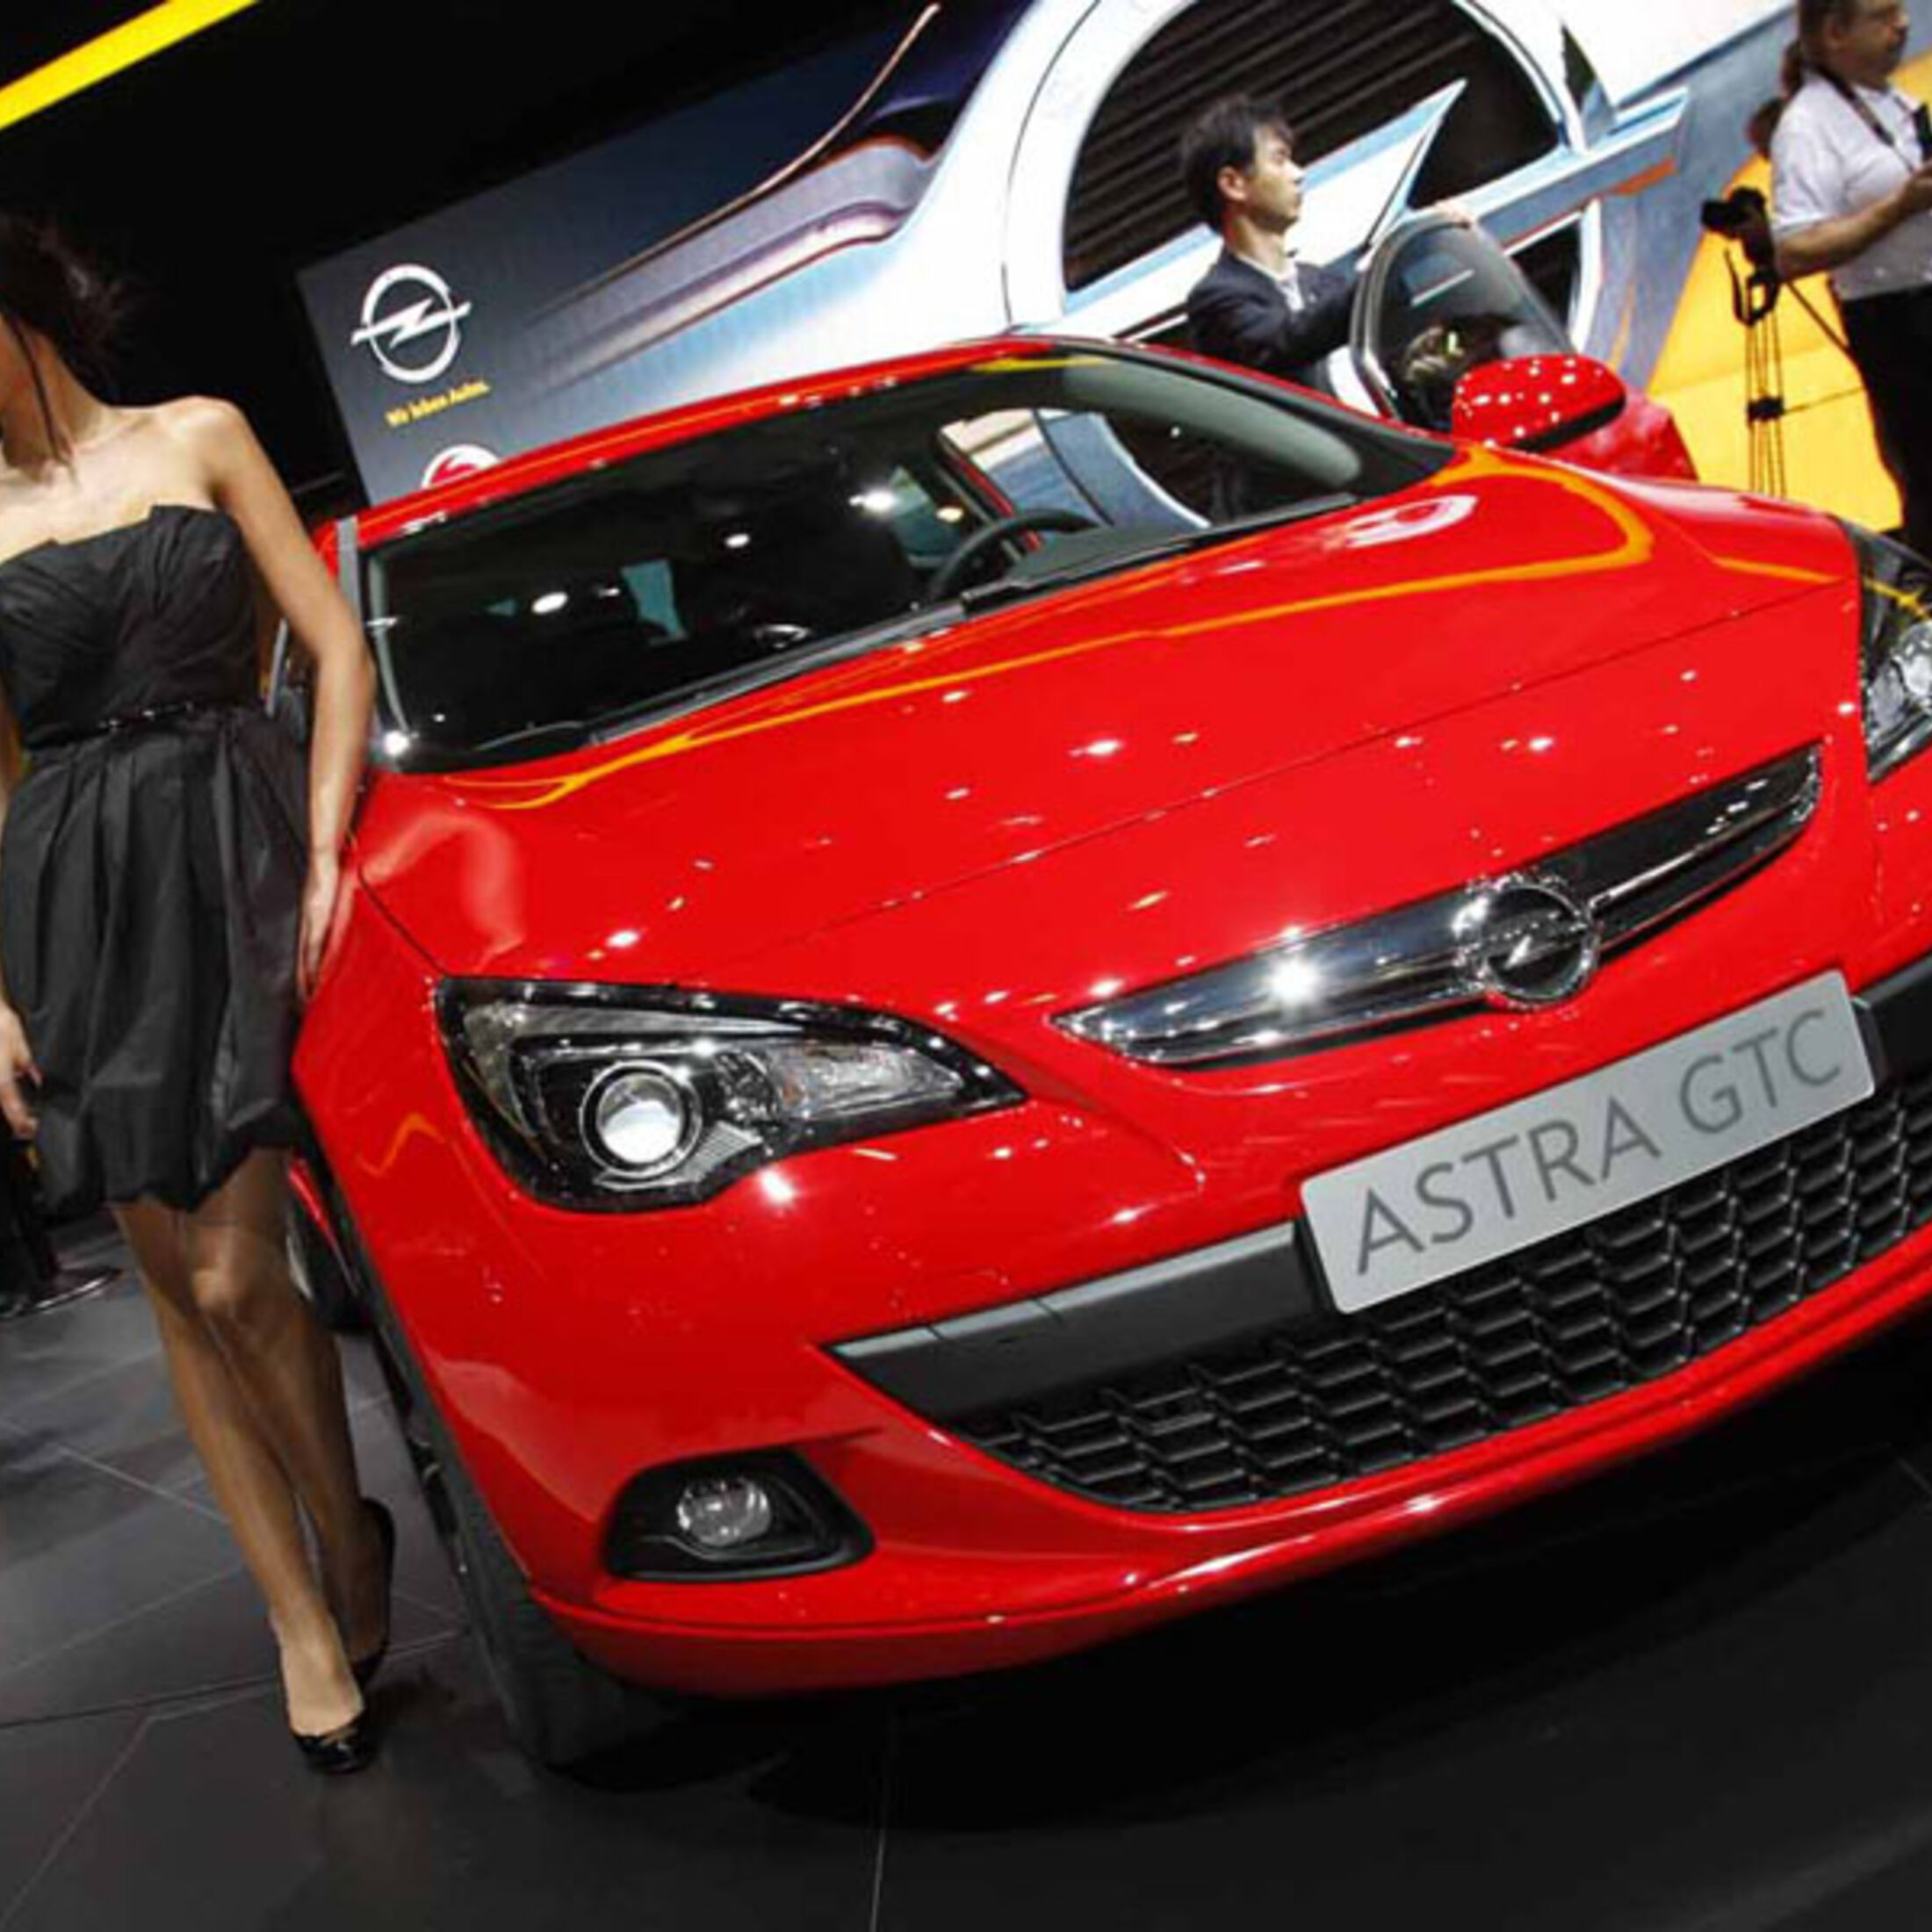 Opel Astra Facelift (2012): Preis & Motor